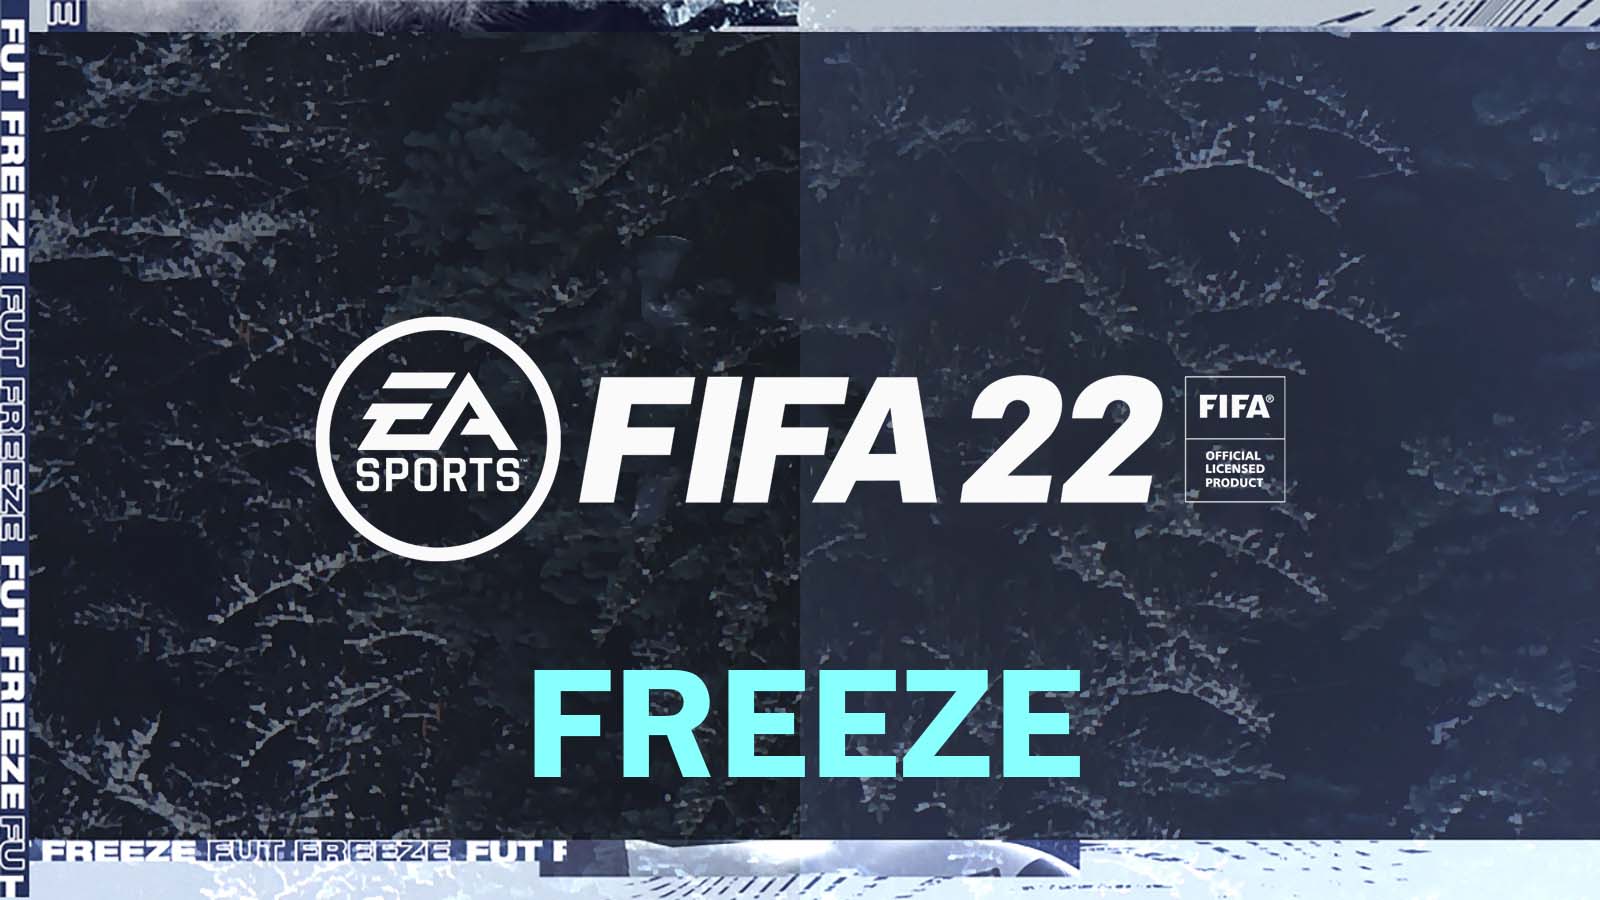 FIFA 22 Freeze promo